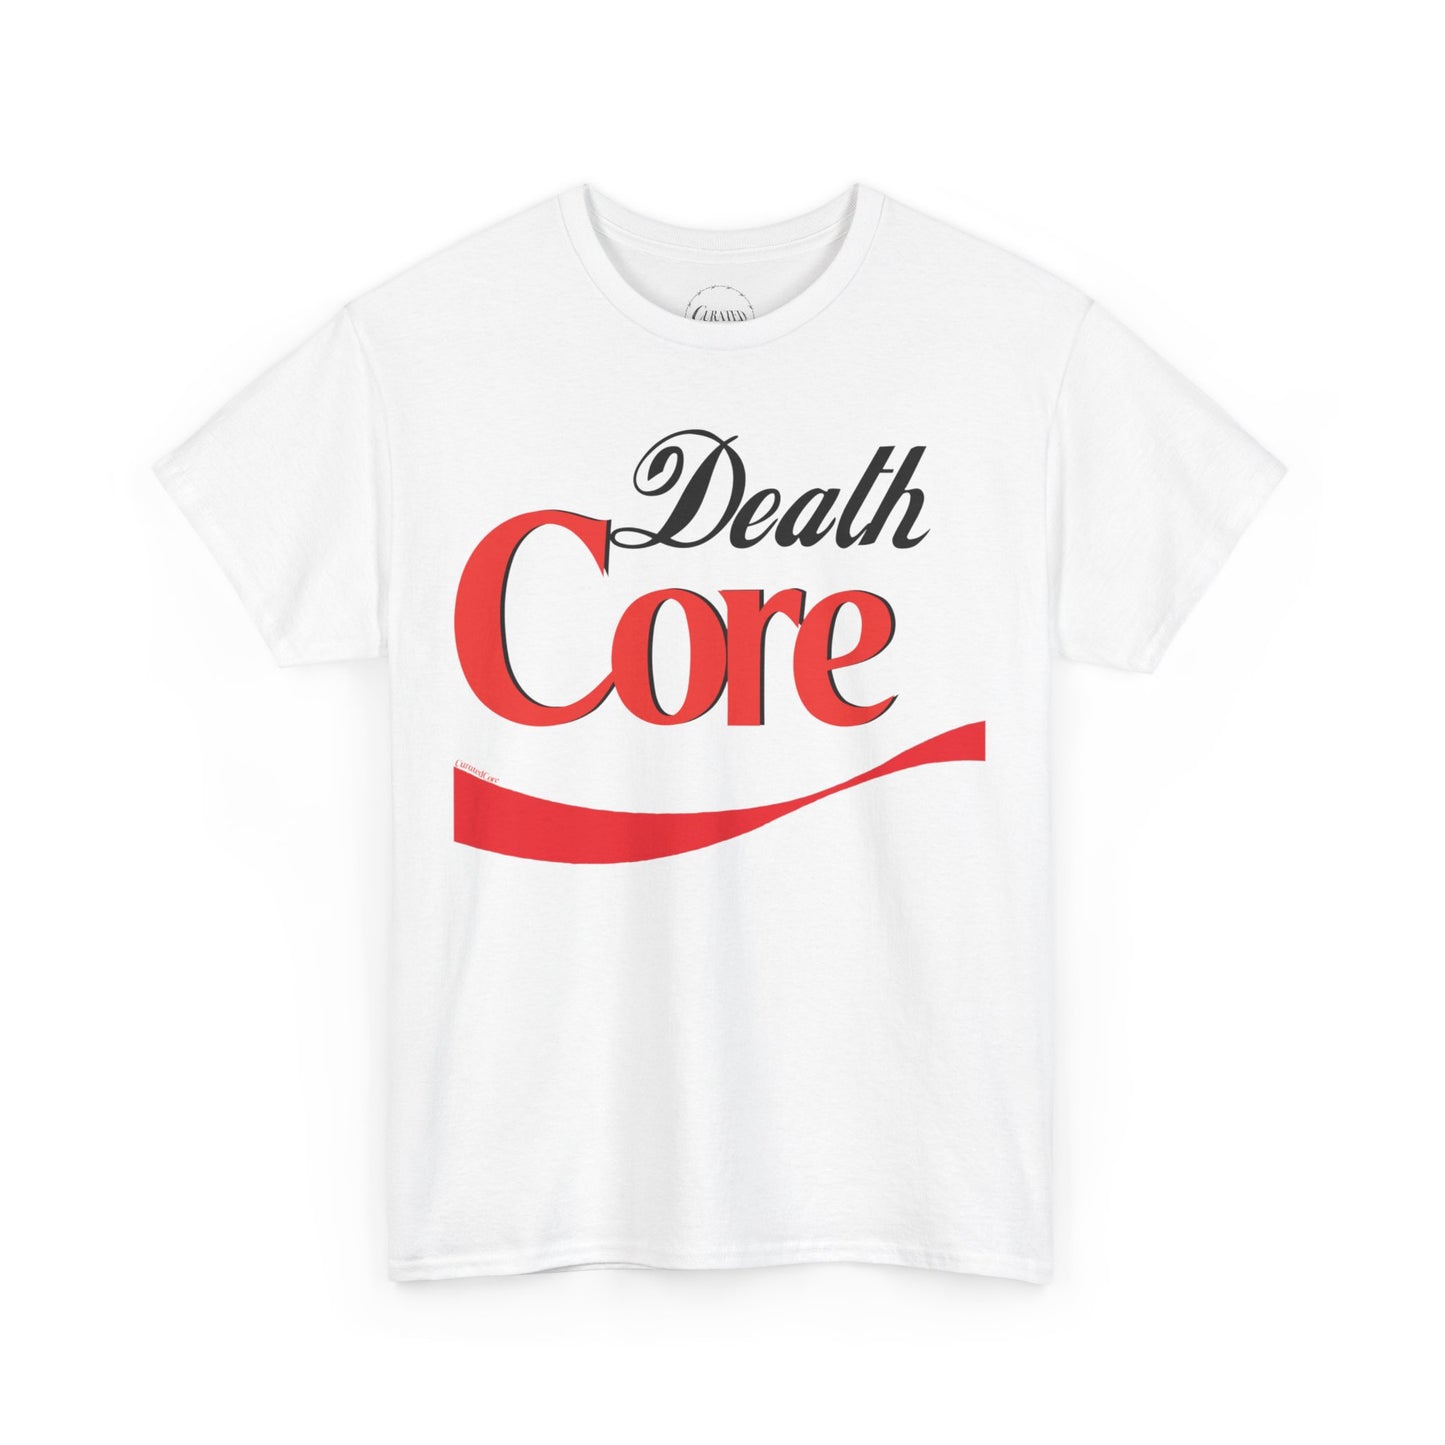 Deathcore diet "coke" T-shirt